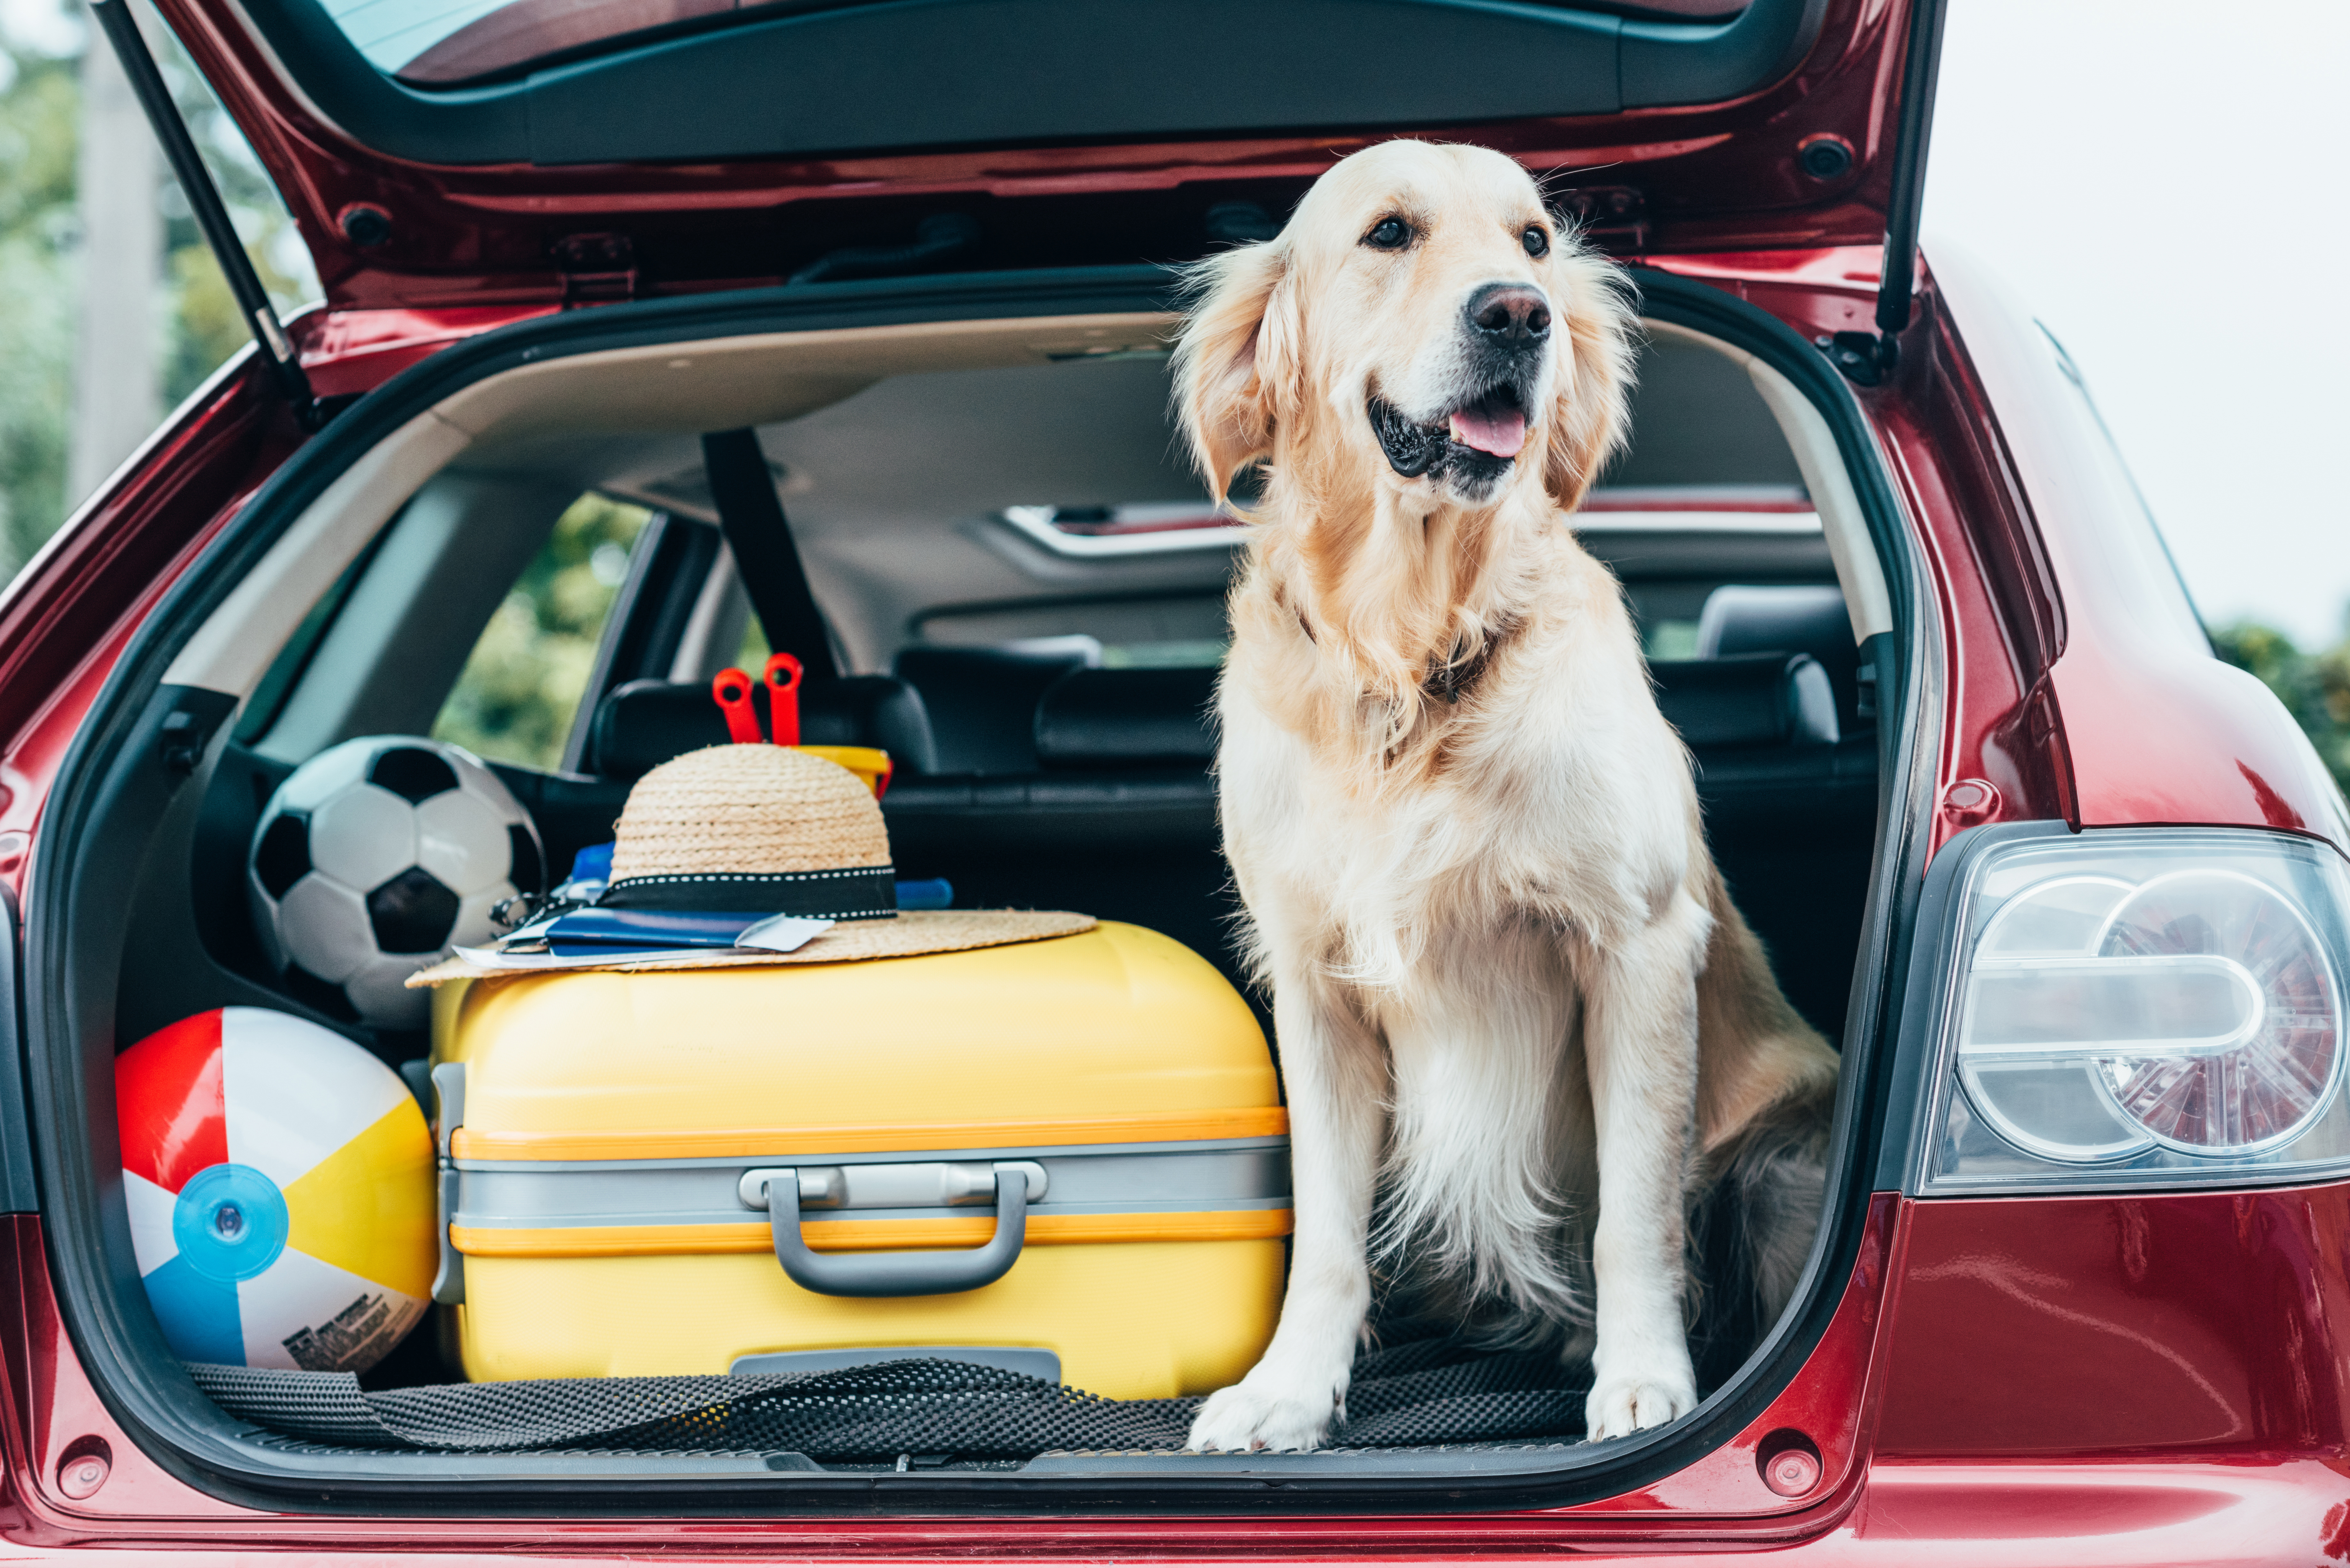 Your pet big. Собака в машине. Путешествие с собакой. Зоотакси. Путешествие с собакой на машине.